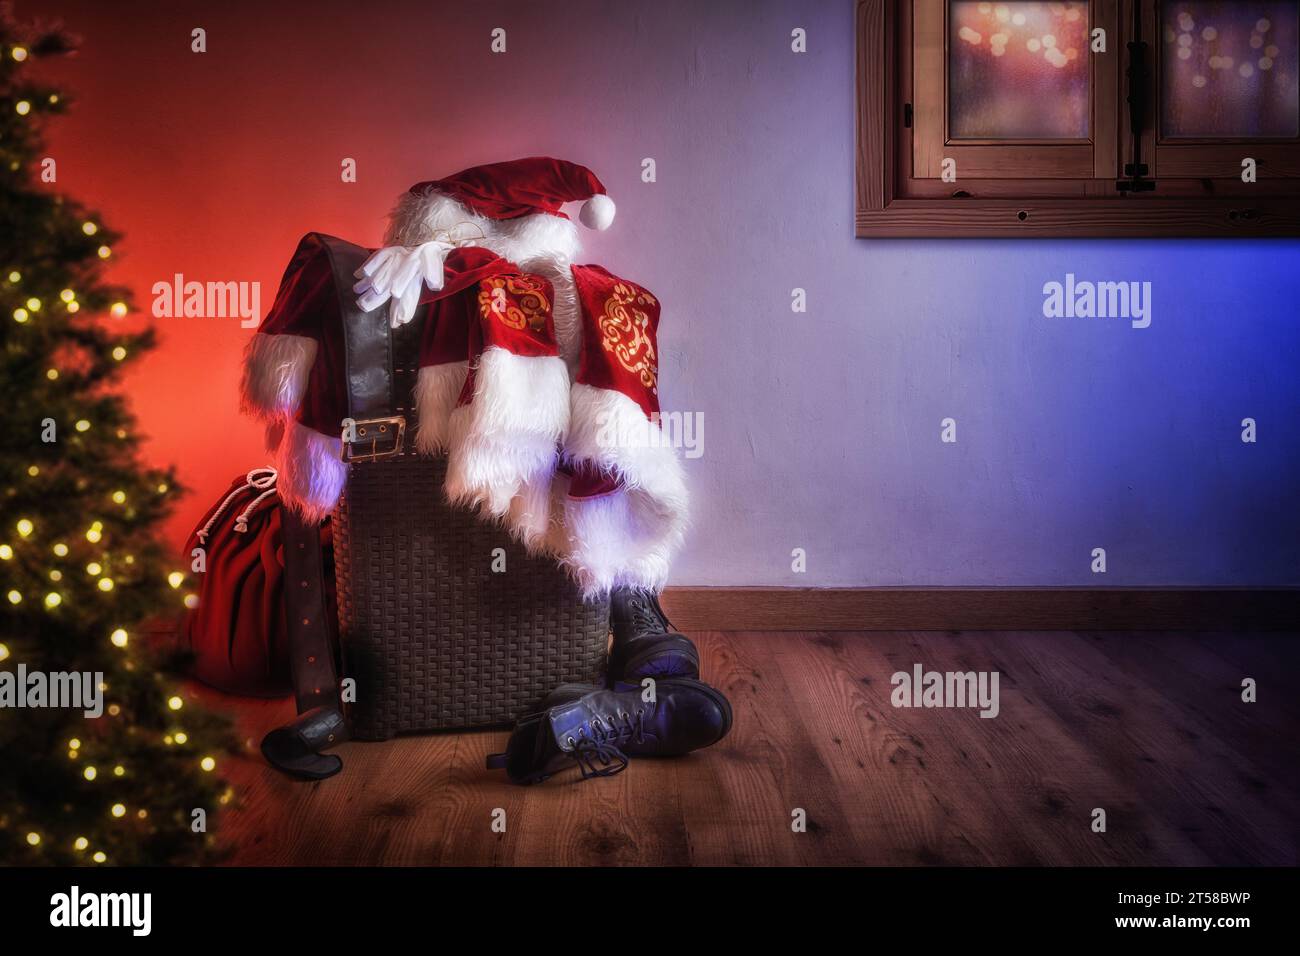 Vêtements du Père Noël et sac avec des cadeaux la veille de Noël dans une pièce en bois avec un arbre avec des lumières et une fenêtre prête à distribuer. Banque D'Images